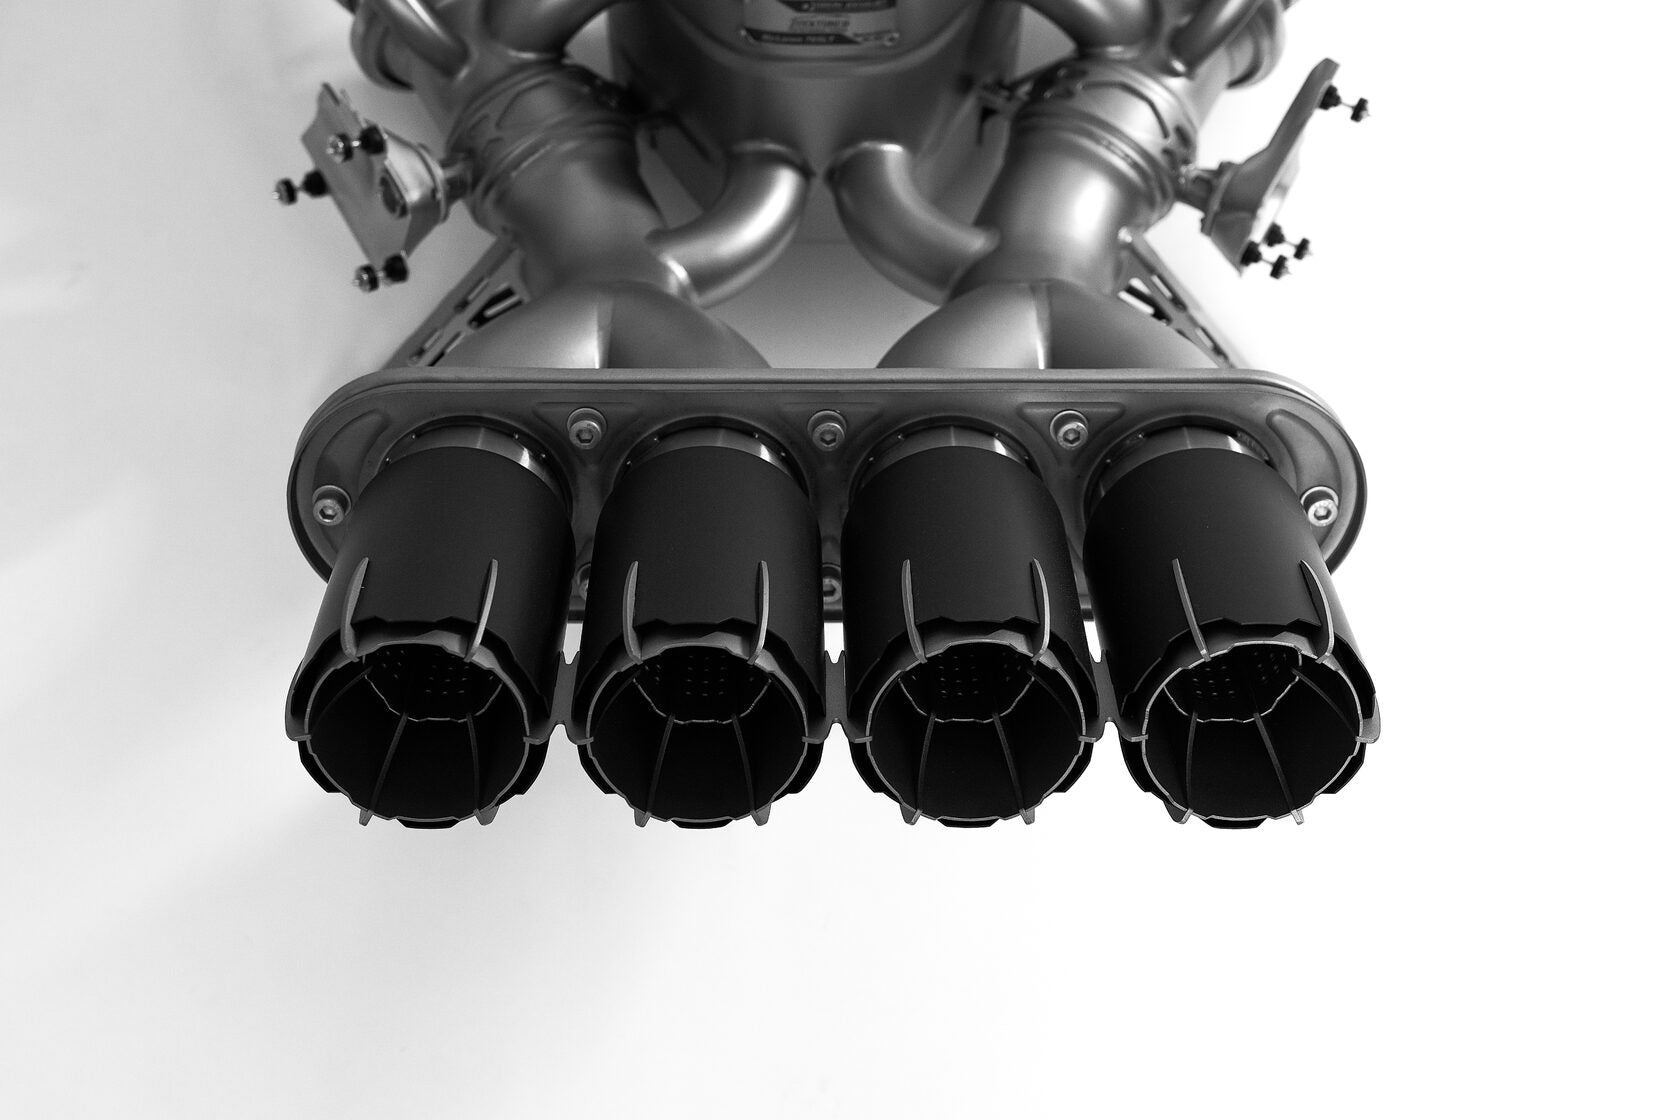 DEIKIN 10-McLaren.765LT-ES-Ti-06 Exhaust system Titan for McLaren 765LT включая даунпайп с thermal insulation HeatShield Black Ceramic Photo-19 